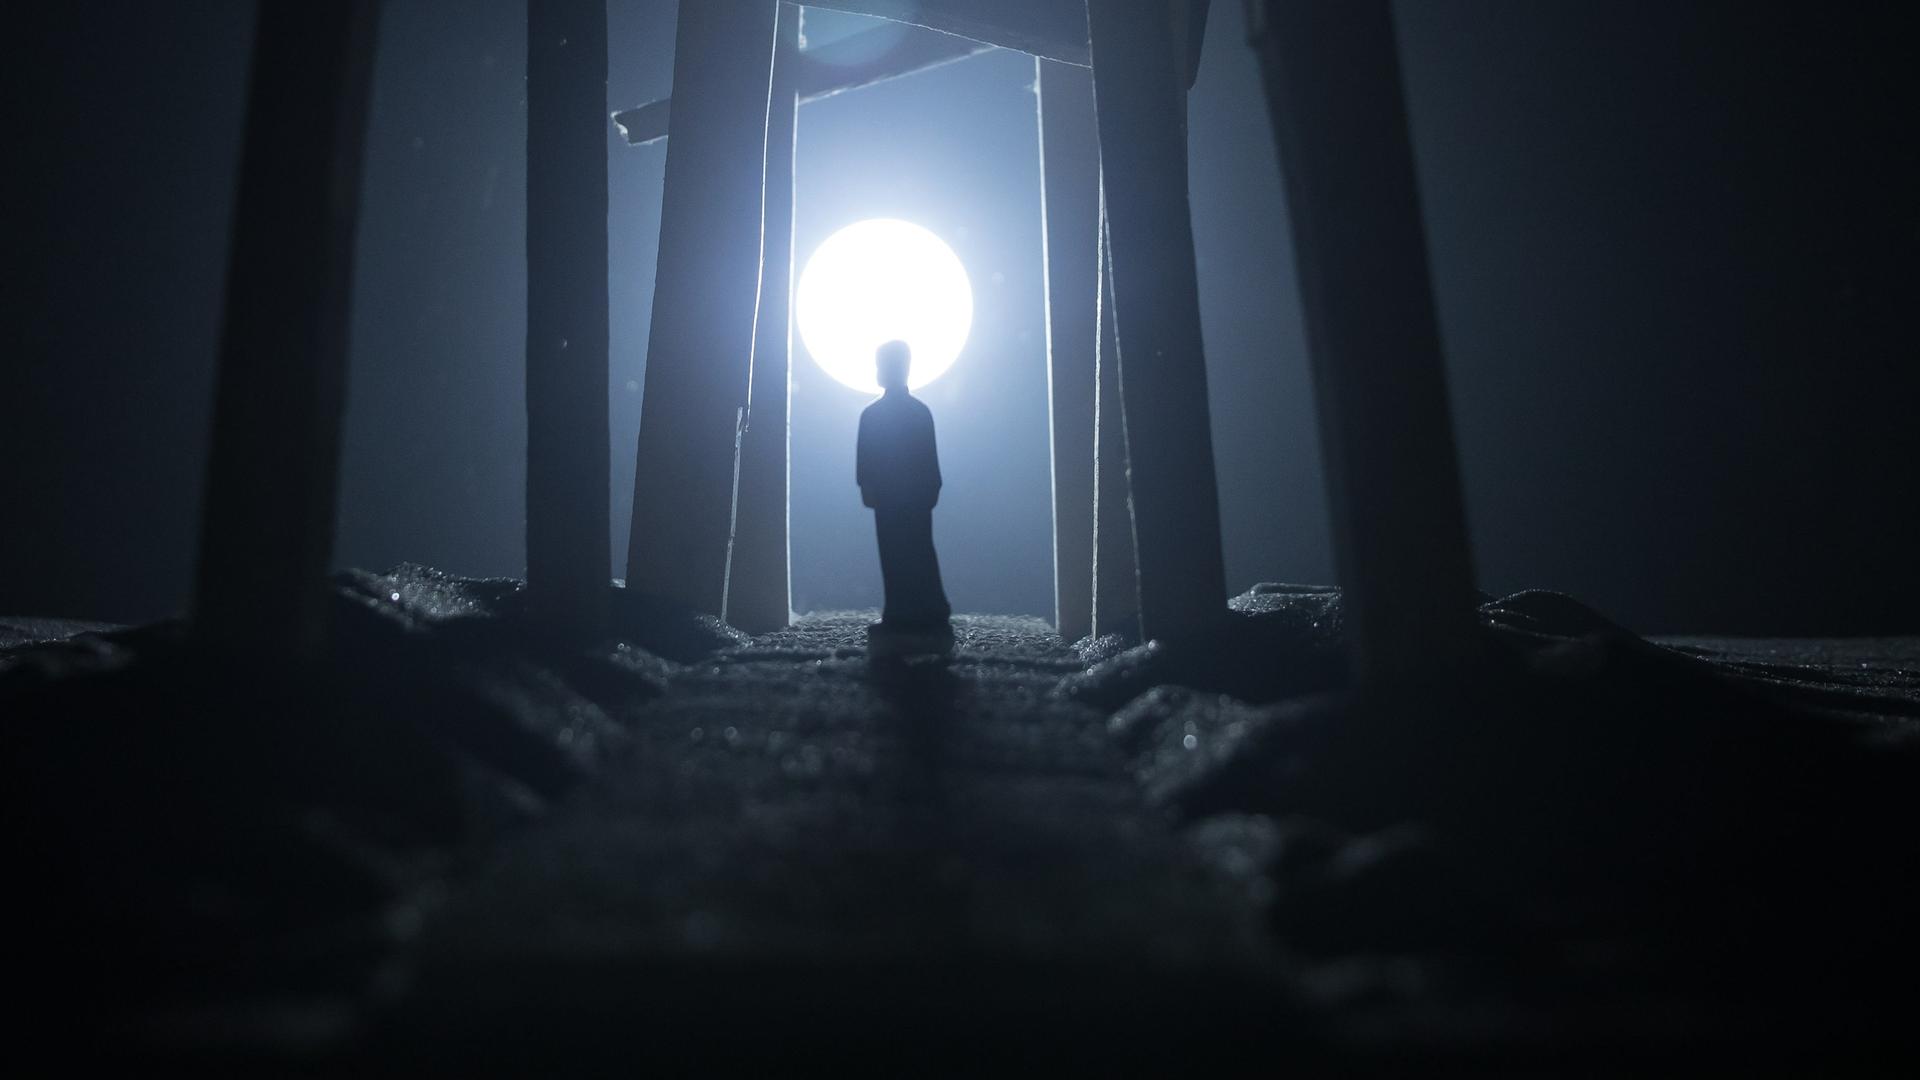 Die Silhouette eines Menschen auf einem nächtlichen Weg im fahlen Mondlicht.